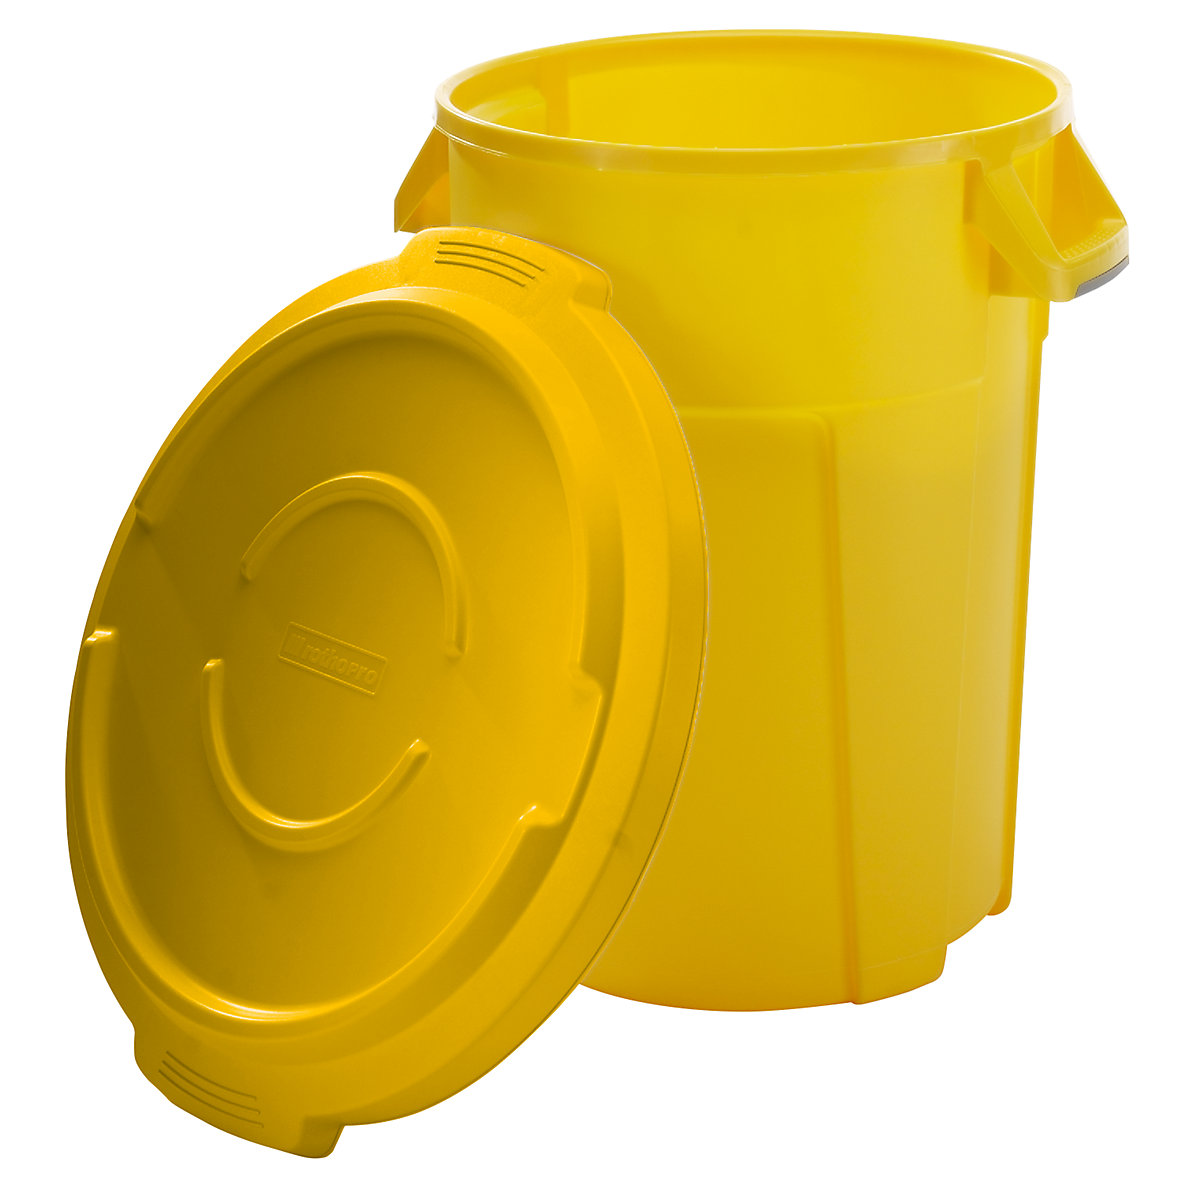 Multifunktionsbehälter mit Deckel rothopro, Volumen 85 l, lebensmittelecht, gelb-3